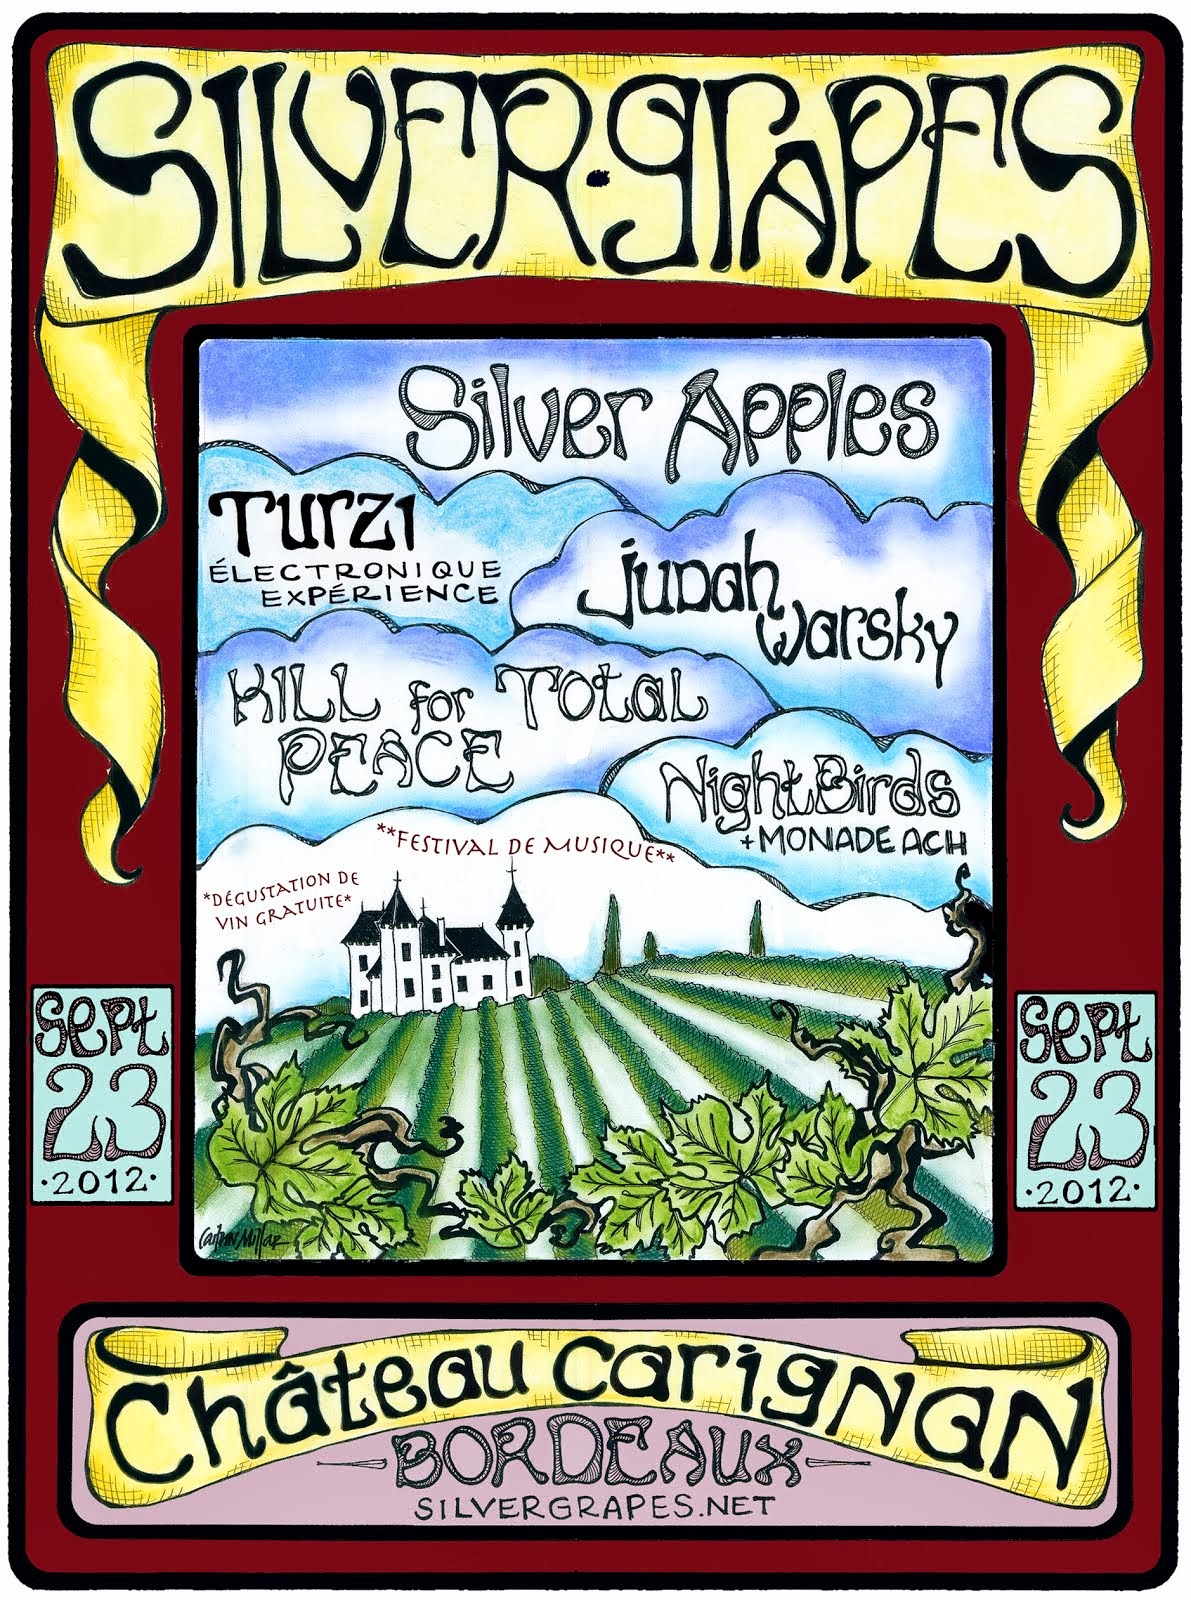 Silver Grapes Music Festival